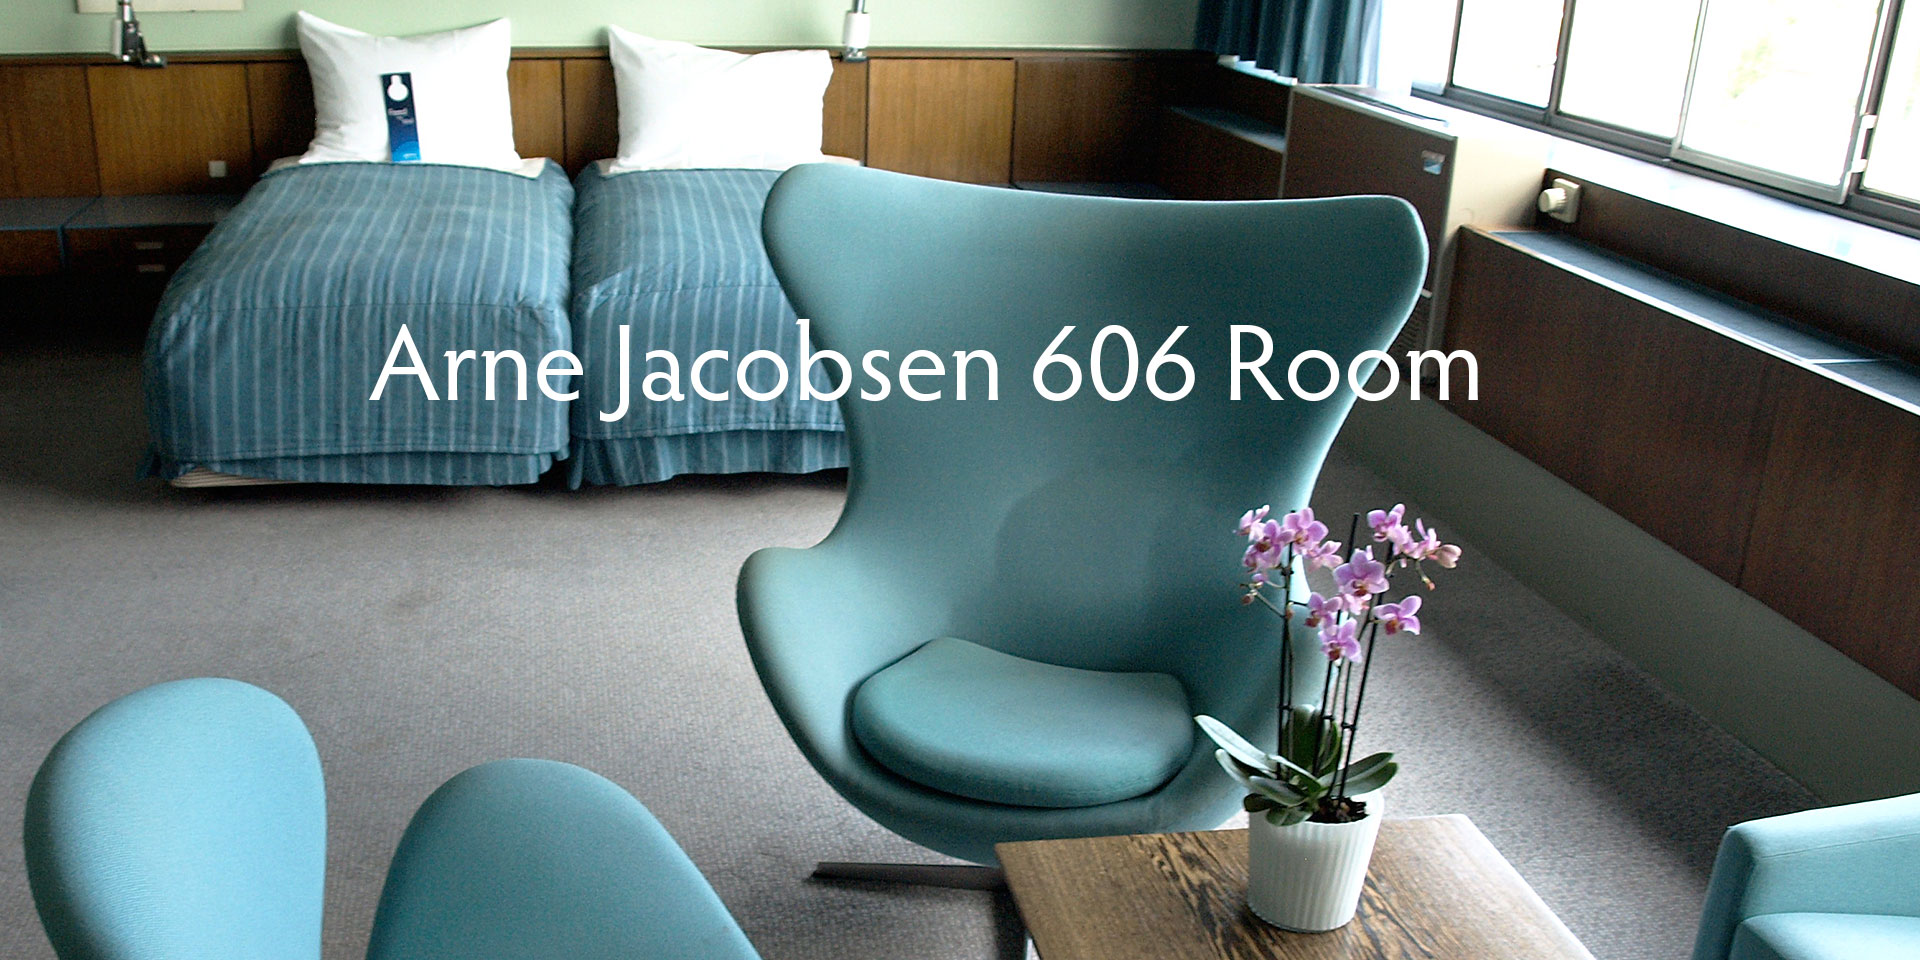 【希少本・新装改訂版】Room 606 アルネ・ヤコブセン